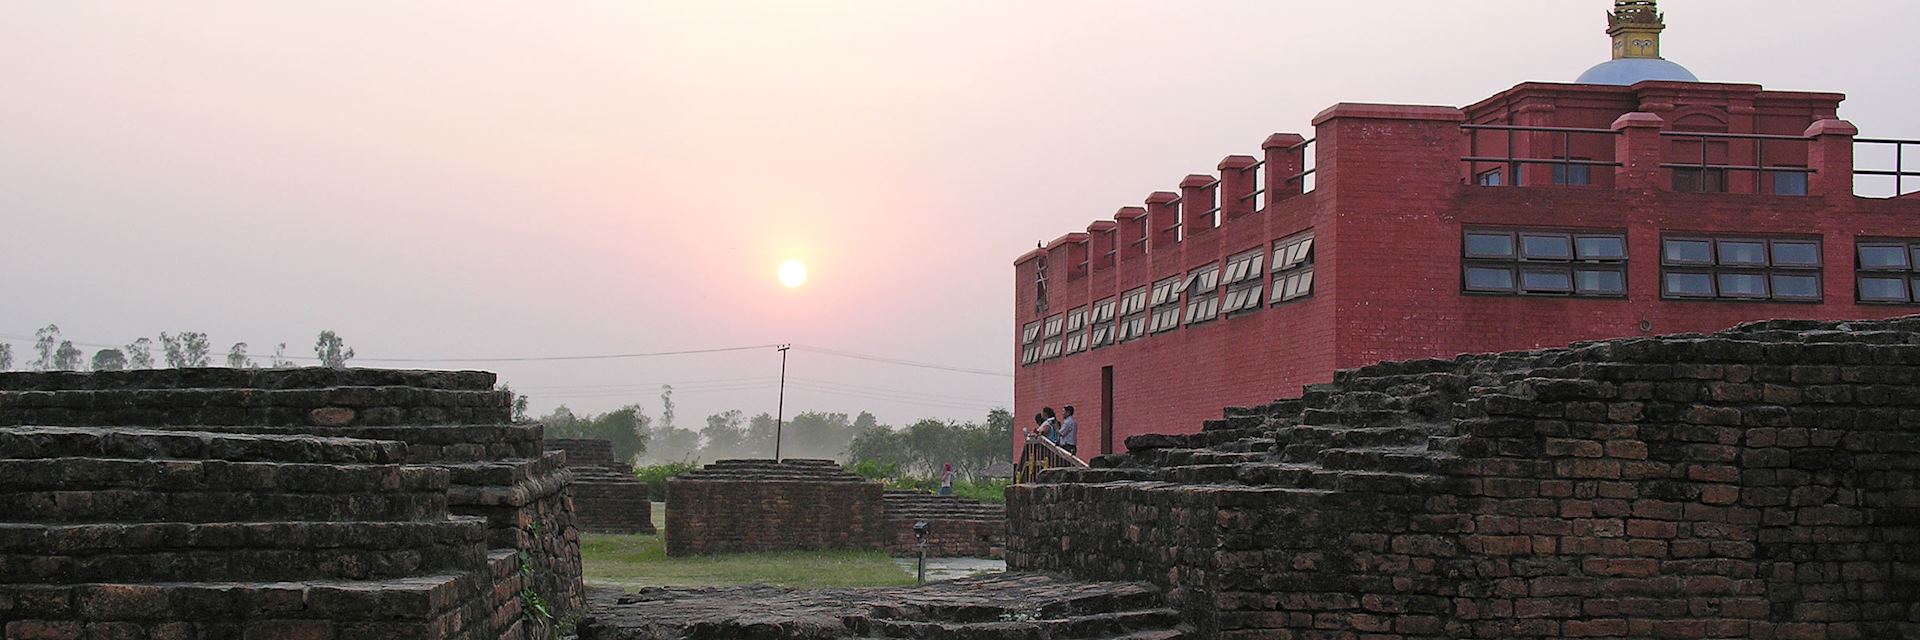 Maya Devi Temple, Lumbini